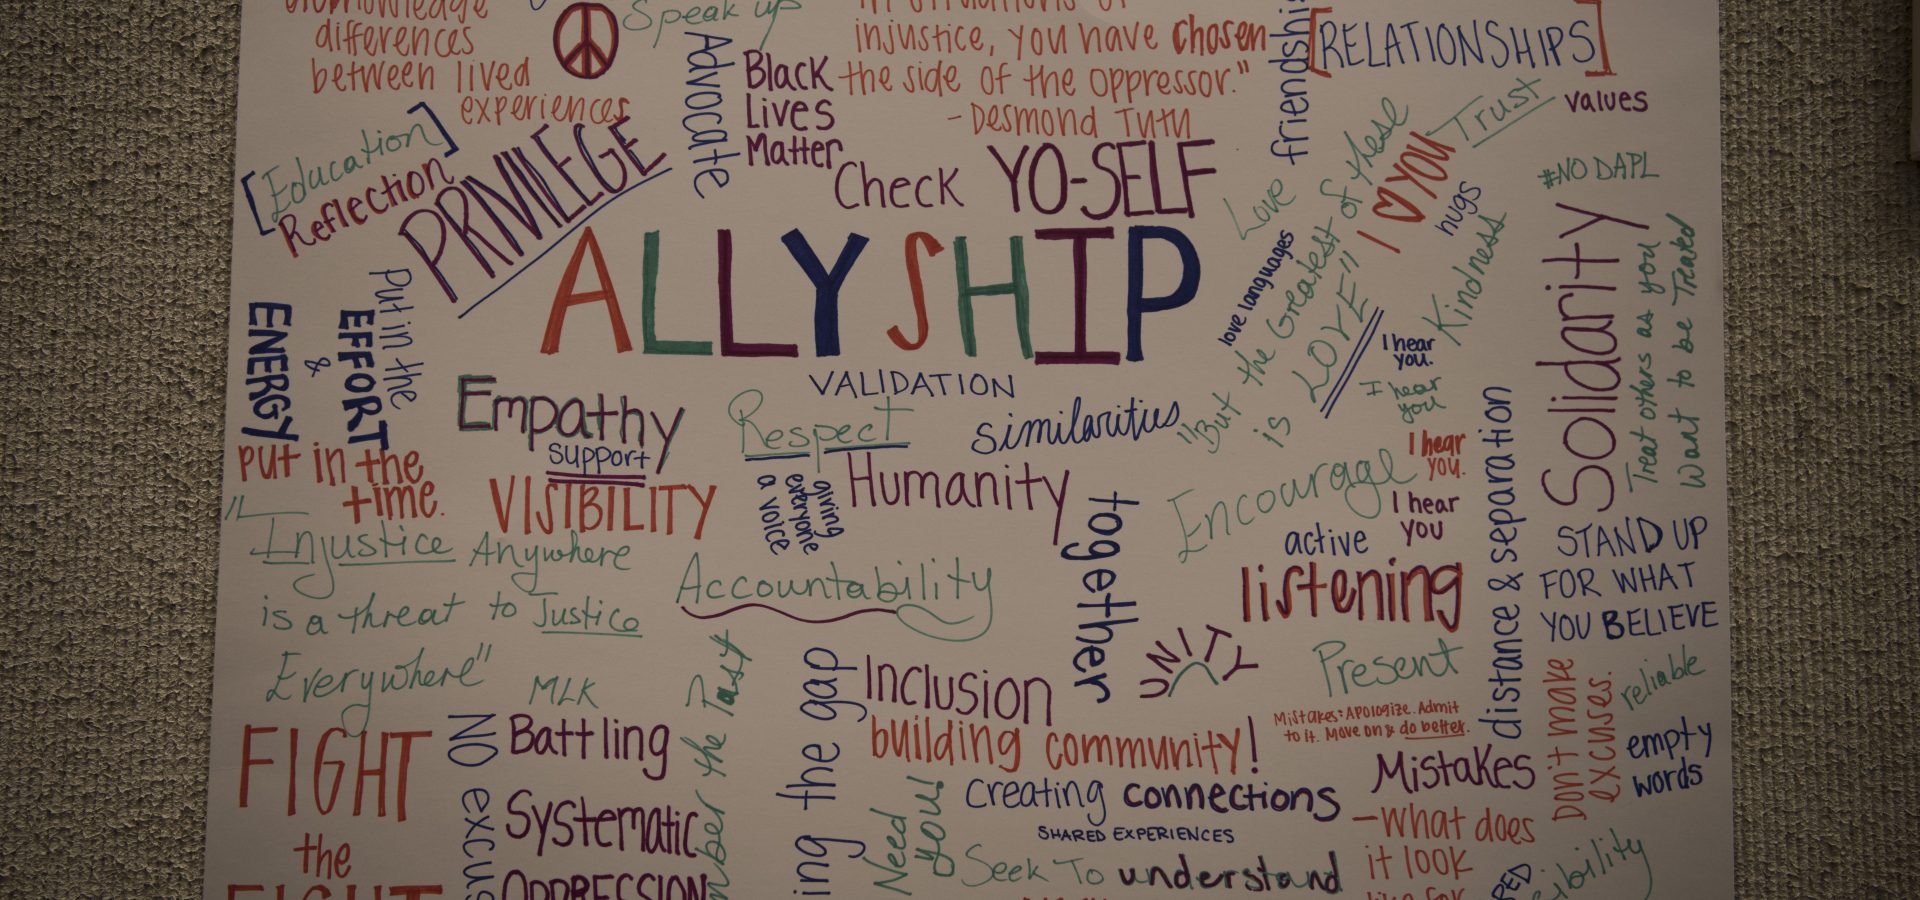 Allyship poster artwork